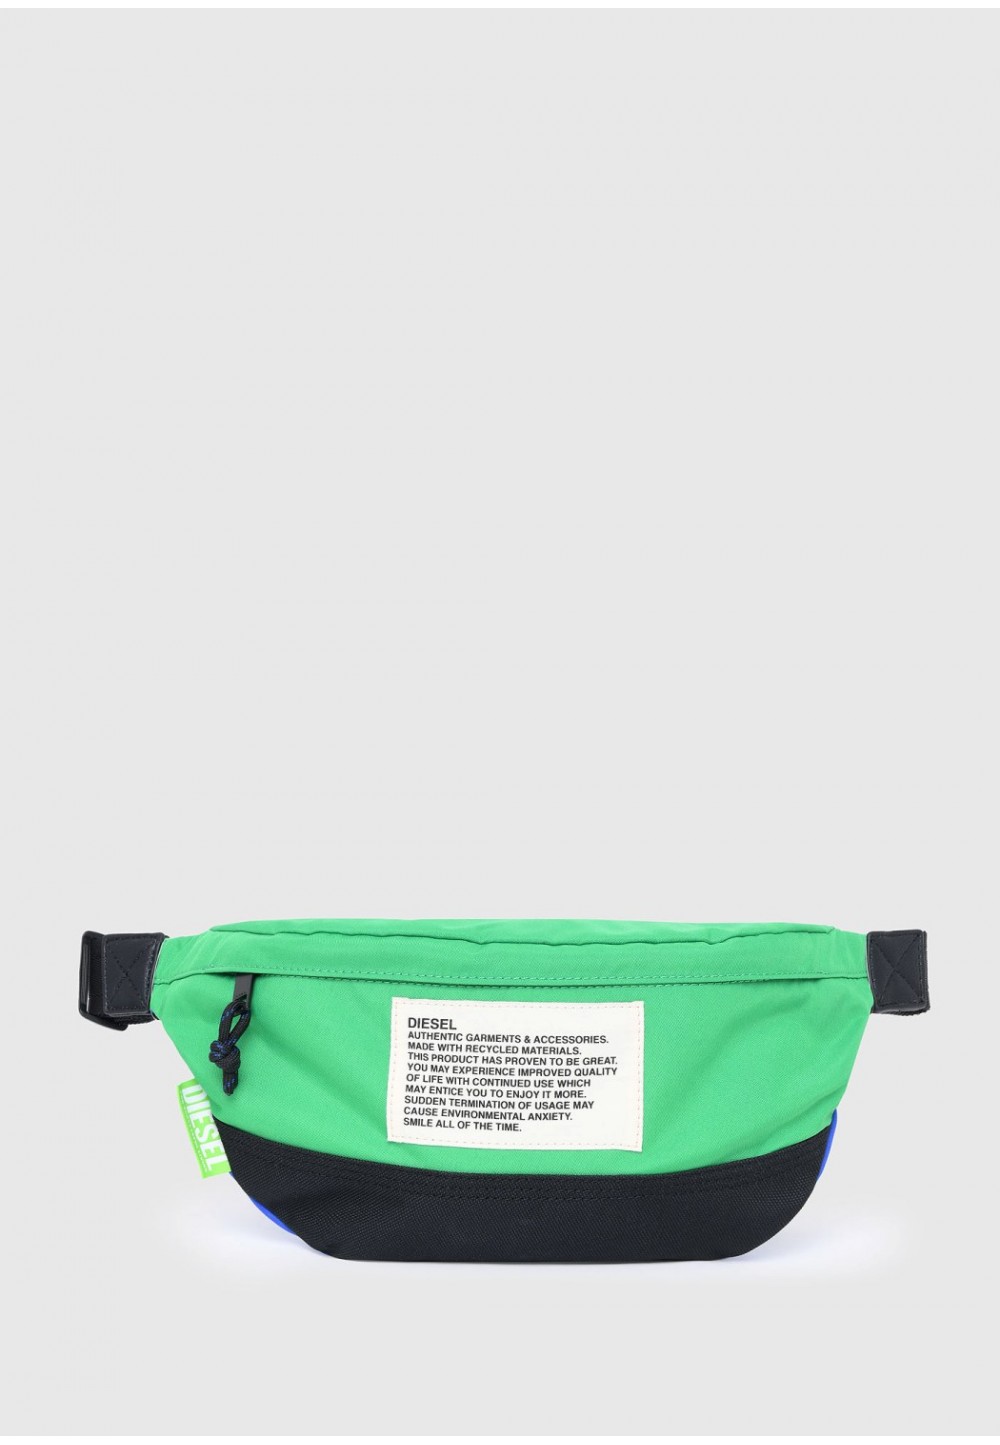 Поясная сумка Green Label с цветными блоками